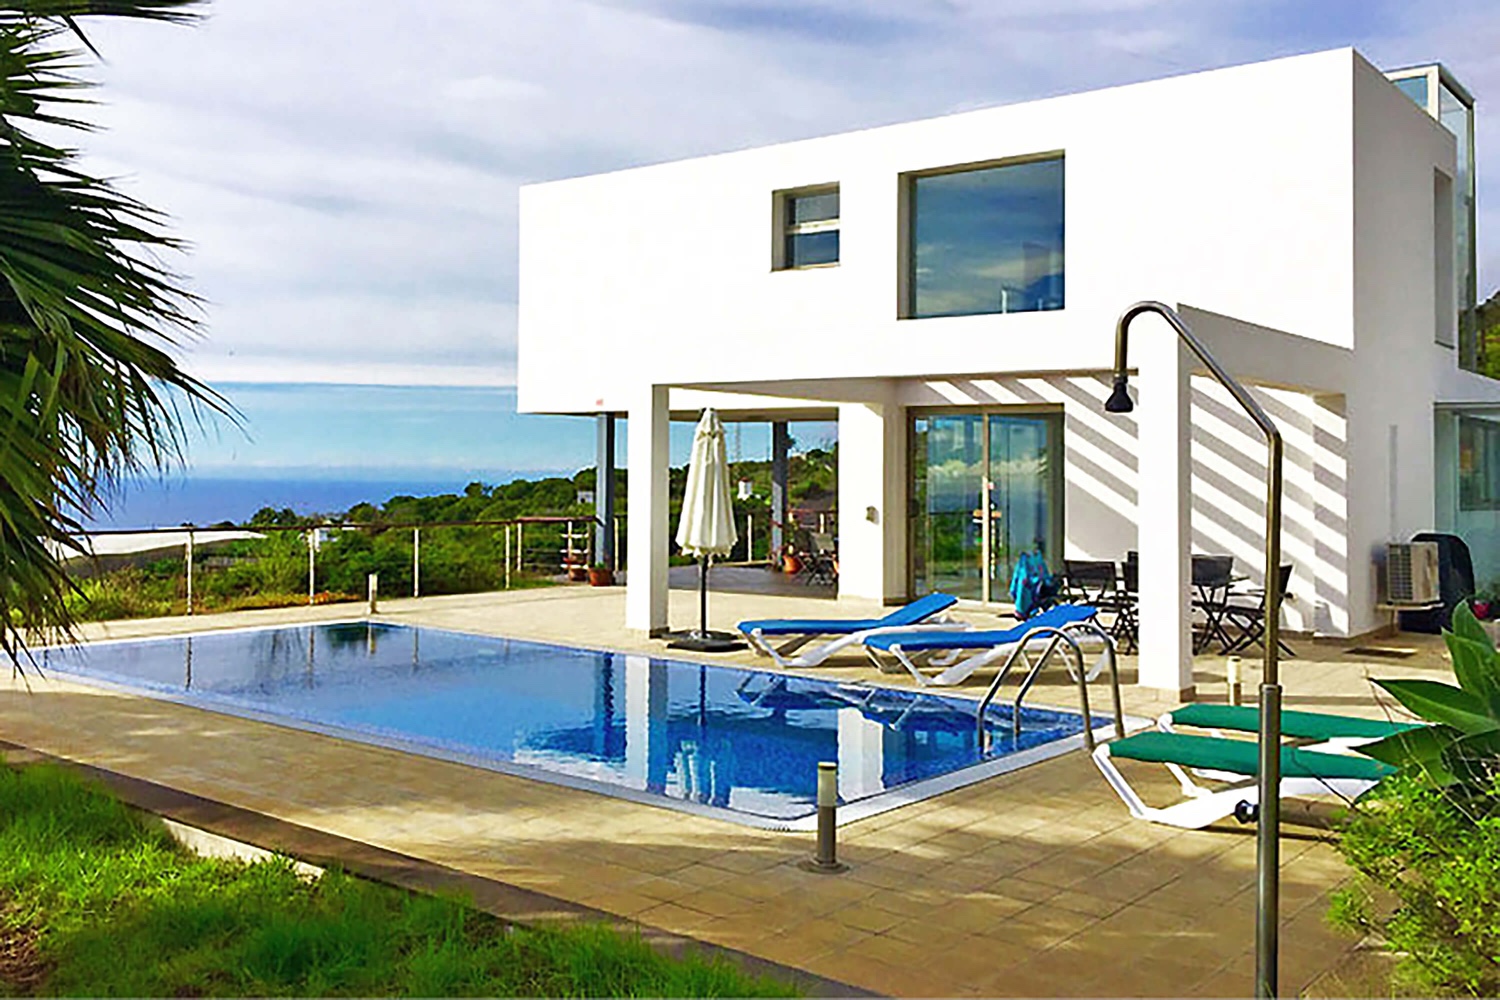 Lussuosa casa vacanze in affitto alla Palma con architettura moderna con grande piscina e splendide viste panoramiche sul mare